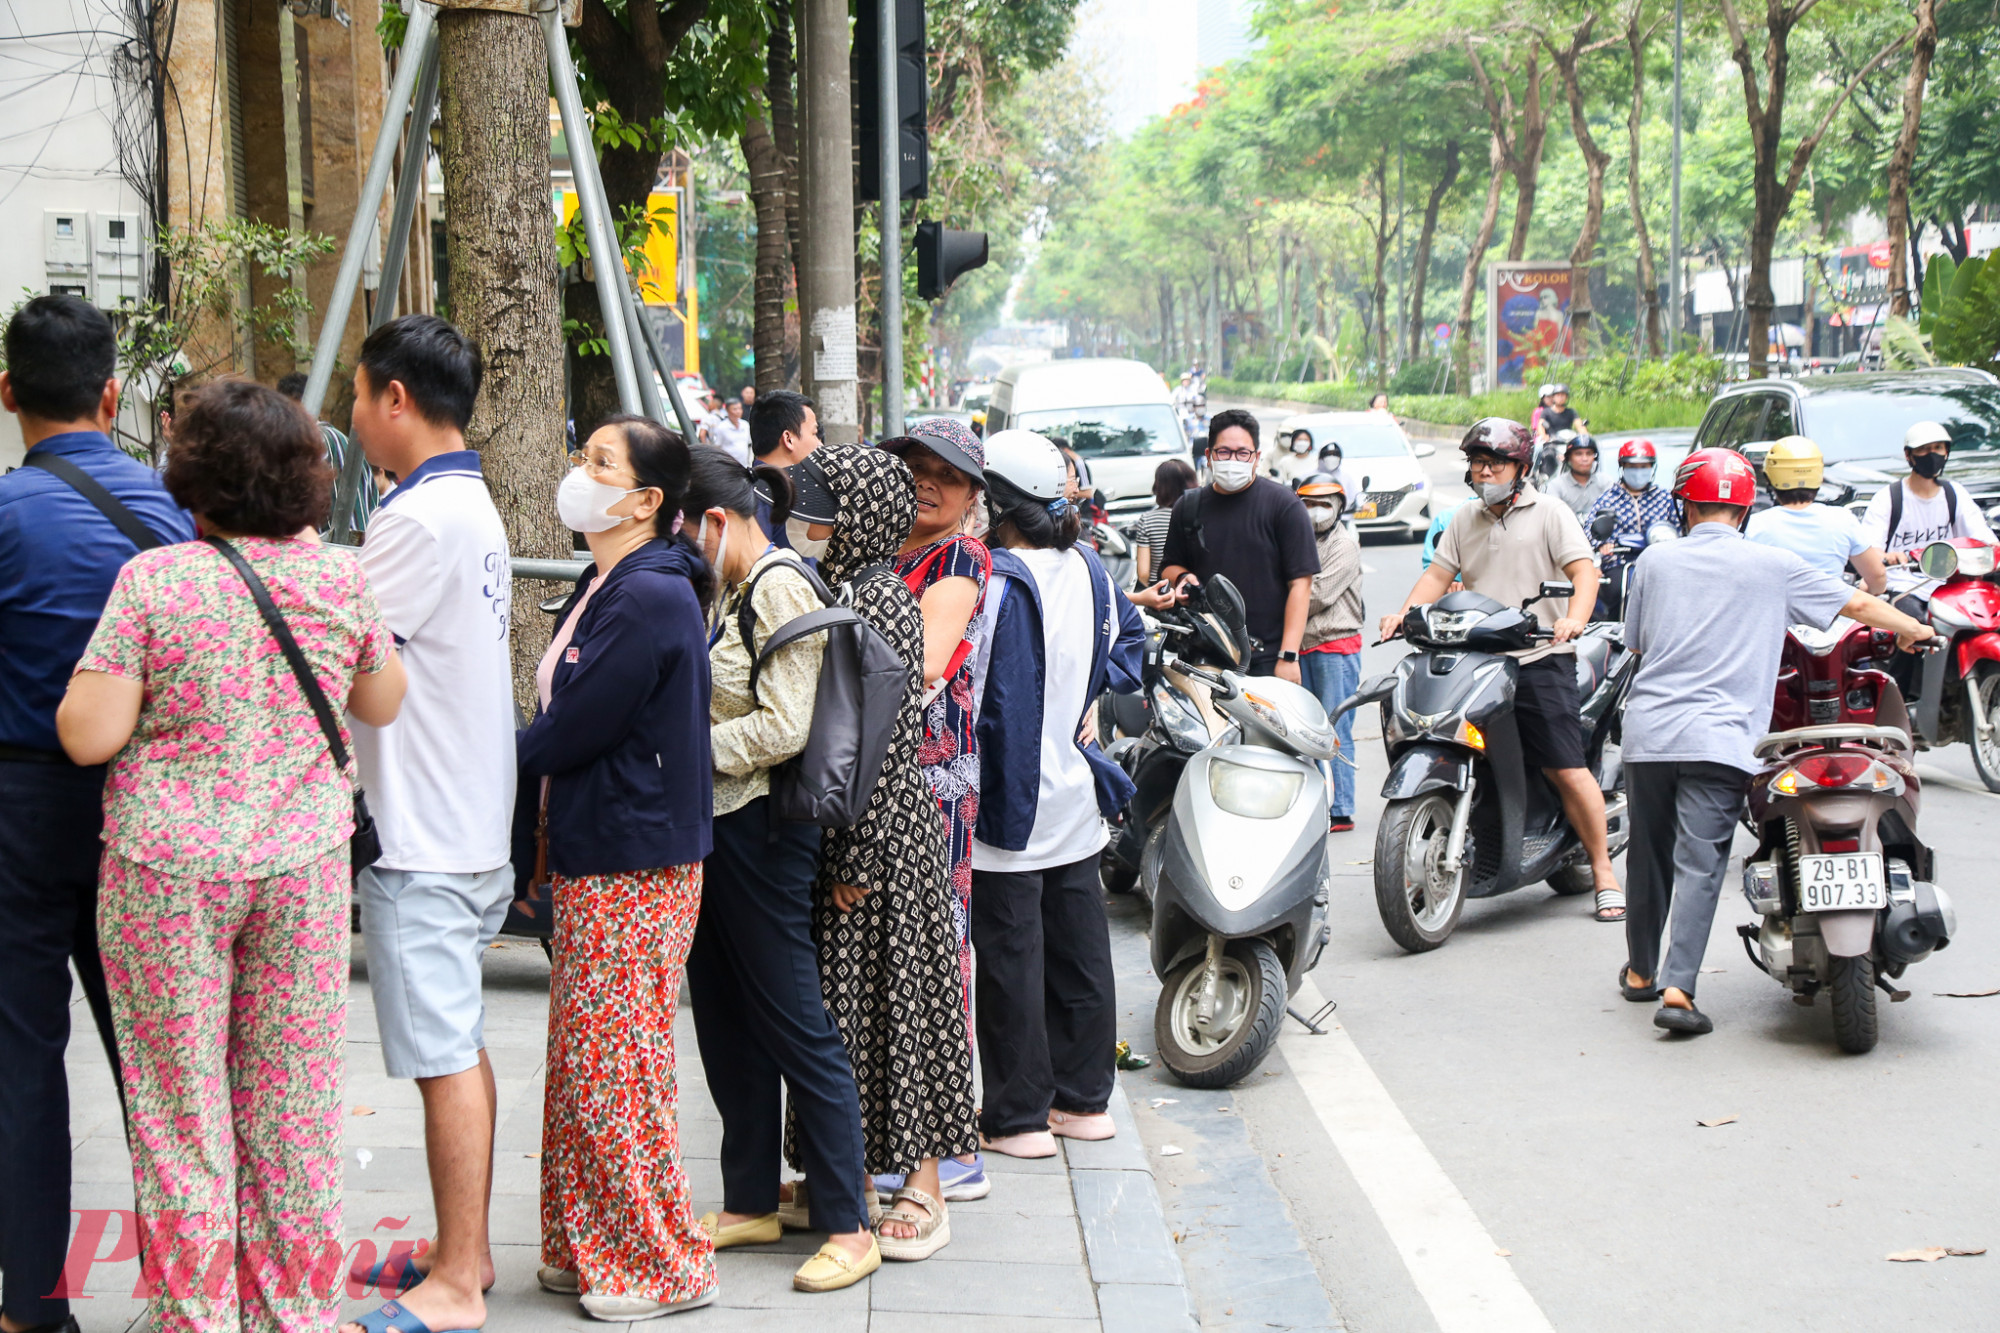 Tại chi nhánh ngân hàng Vietcombank tại đường Láng Hạ, hàng trăm người tập trung tại đây, nhiều ngừoi đến sau ngán ngẩm cảnh xếp hàng  nên quay xe ra về.